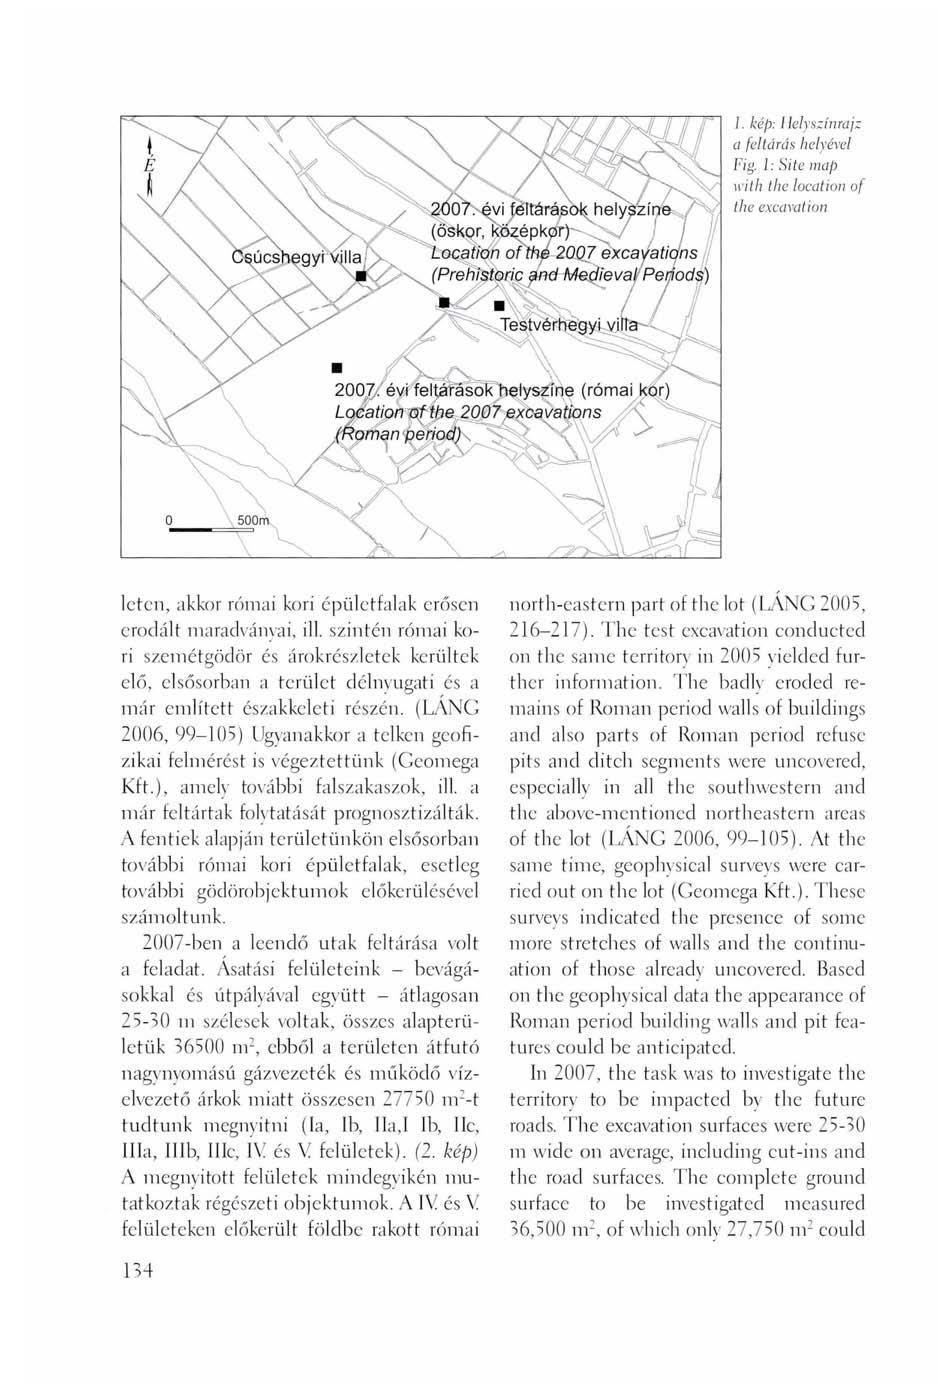 1. kép: Helyszínrajz a feltárás helyével Fig. 1: Site map with the location of the excavation léten, akkor római kori épületfalak erősen erodált maradványai, ill.